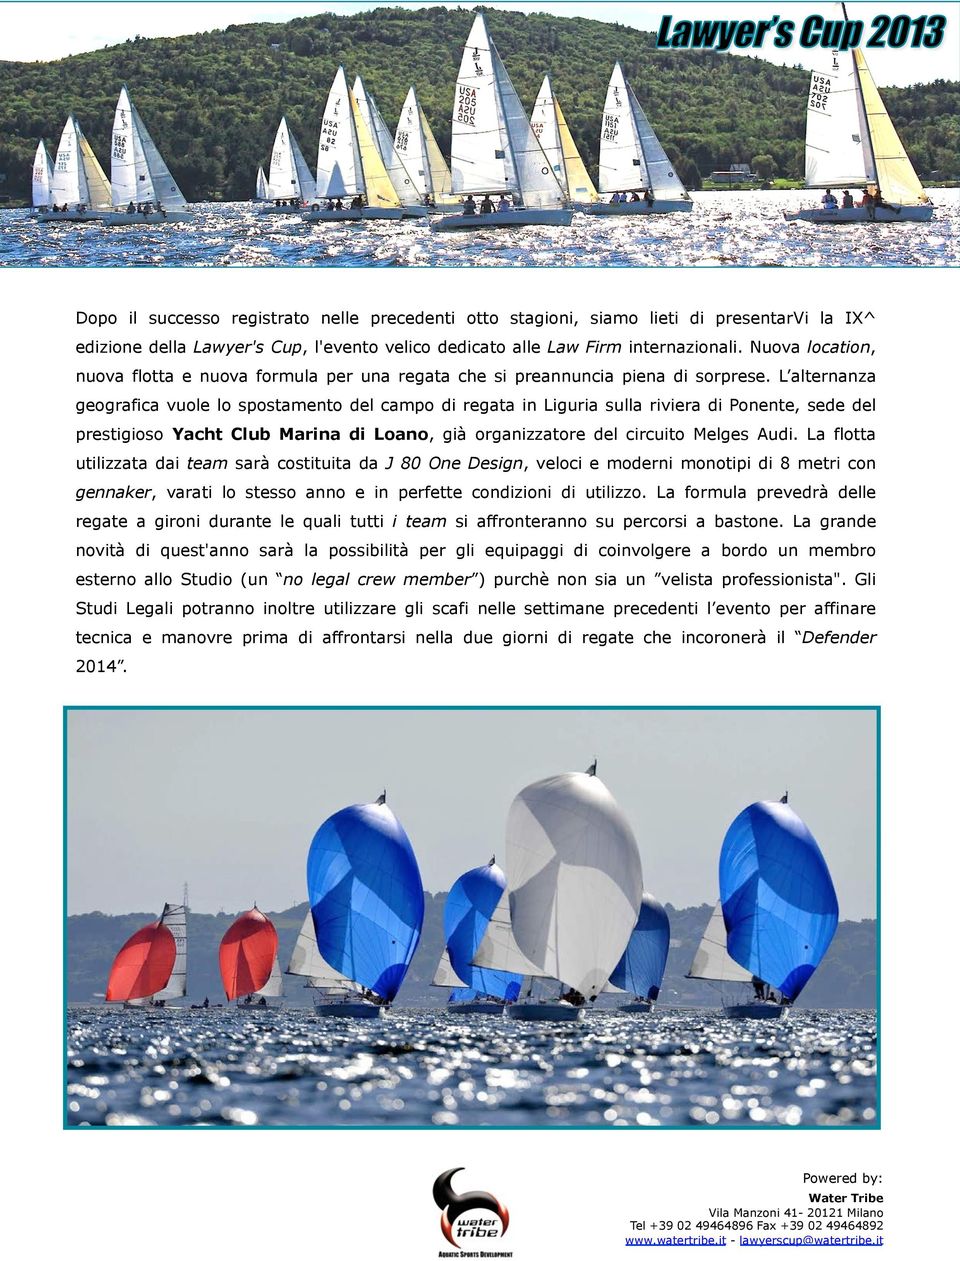 L alternanza geografica vuole lo spostamento del campo di regata in Liguria sulla riviera di Ponente, sede del prestigioso Yacht Club Marina di Loano, già organizzatore del circuito Melges Audi.